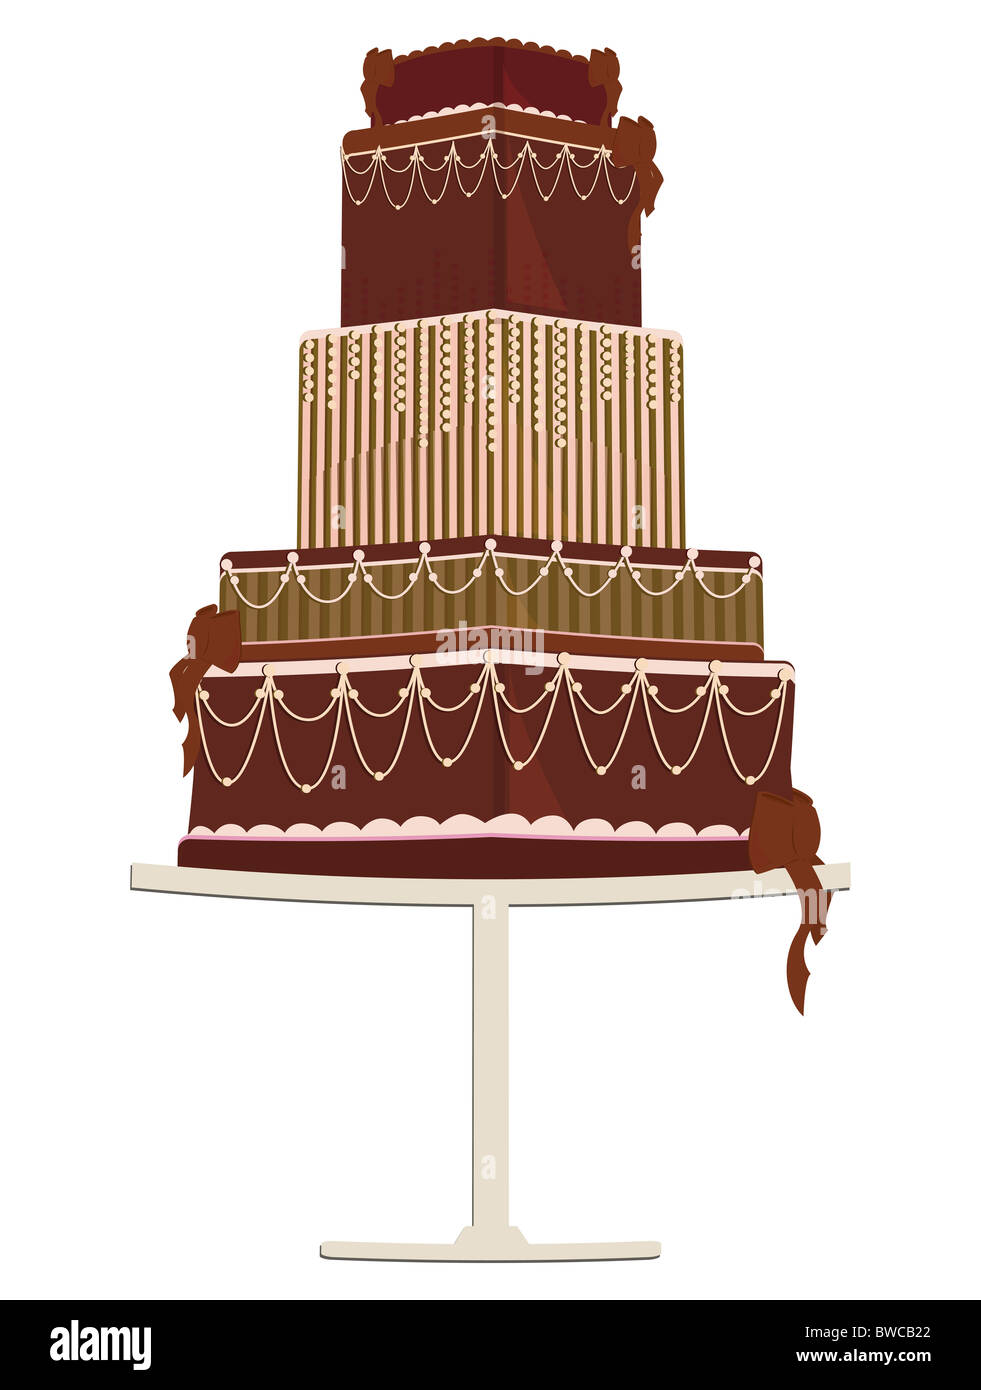 Abbildung einer mehrschichtigen Phantasie Schokoladenkuchen mit dekorativen Zuckerguss und Bögen auf eine Kuchenplatte Stockfoto